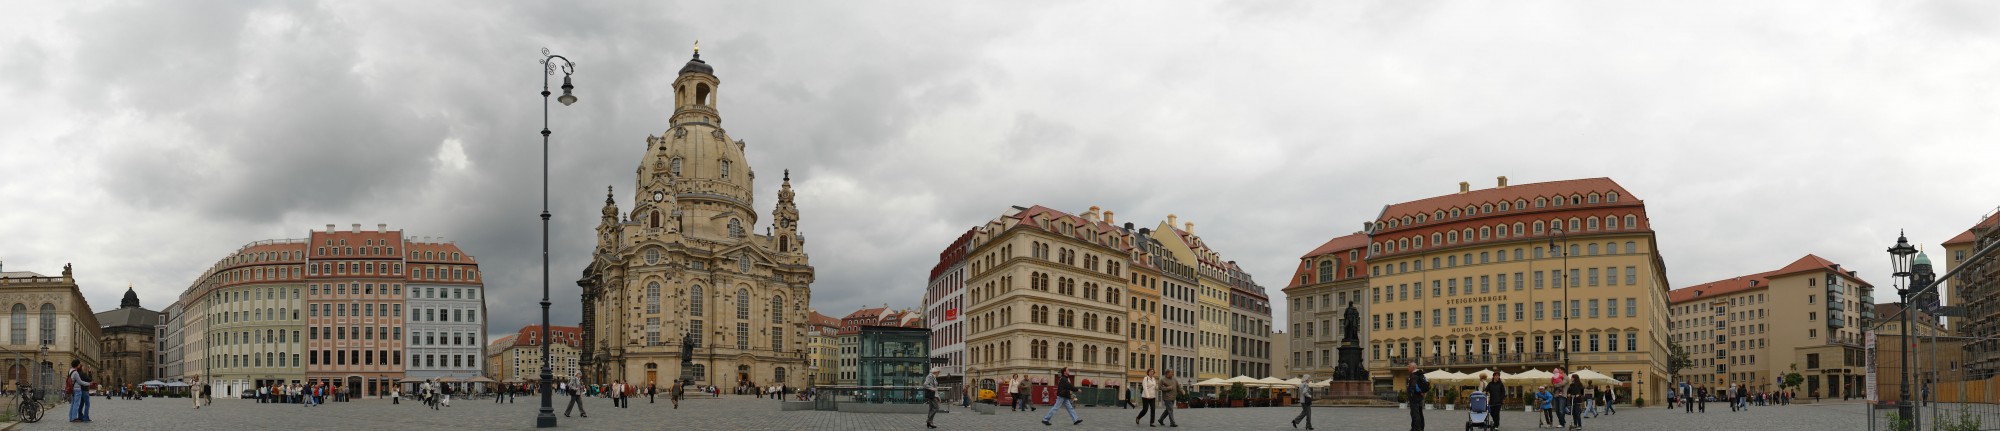 Dresden-Neumarkt-pano